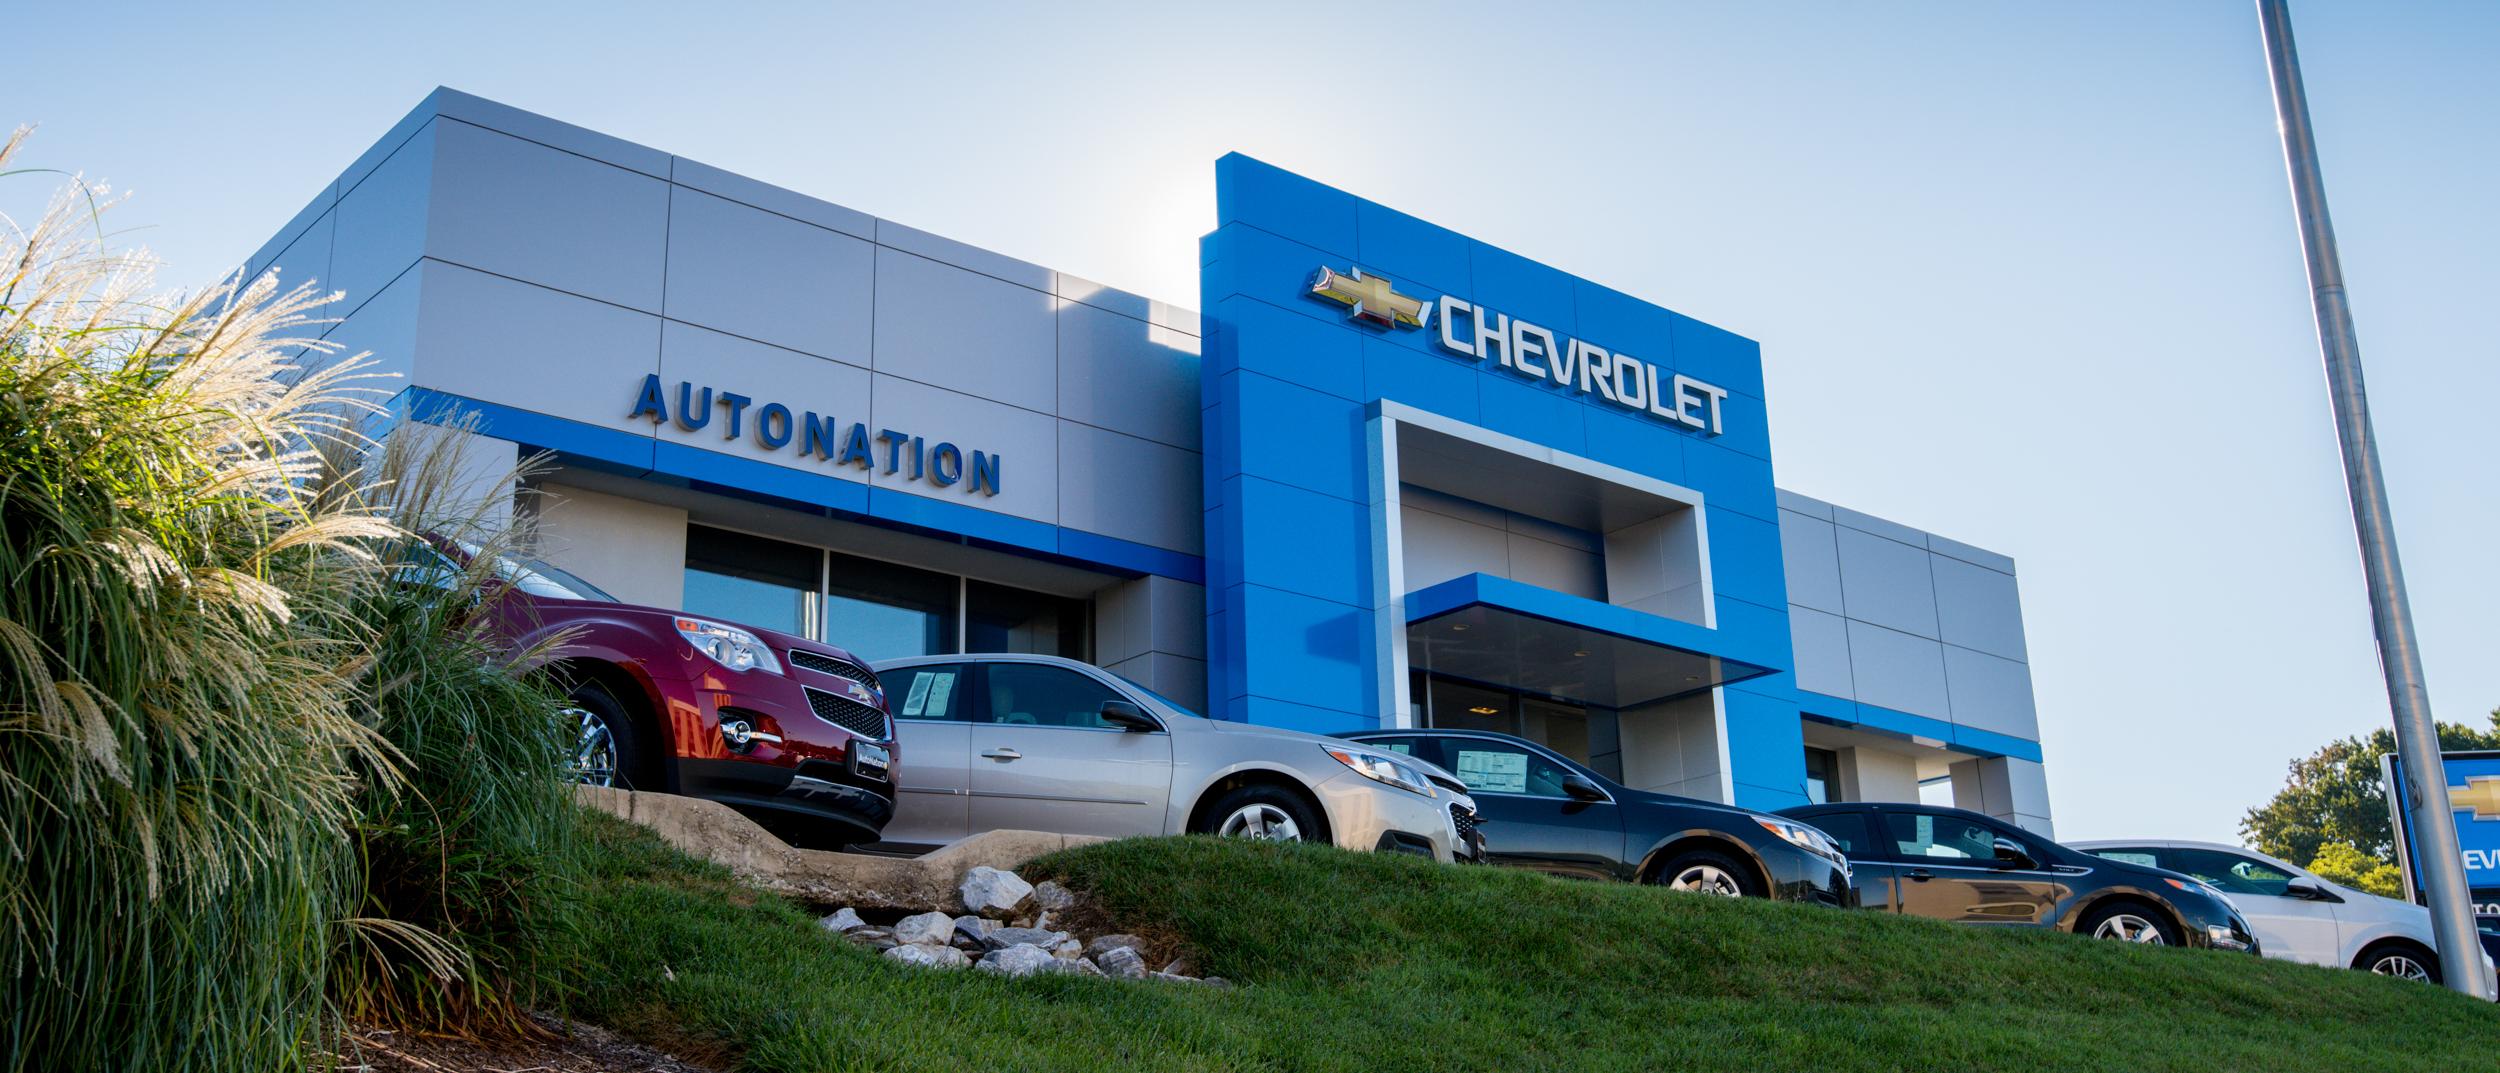 AutoNation Chevrolet Timonium